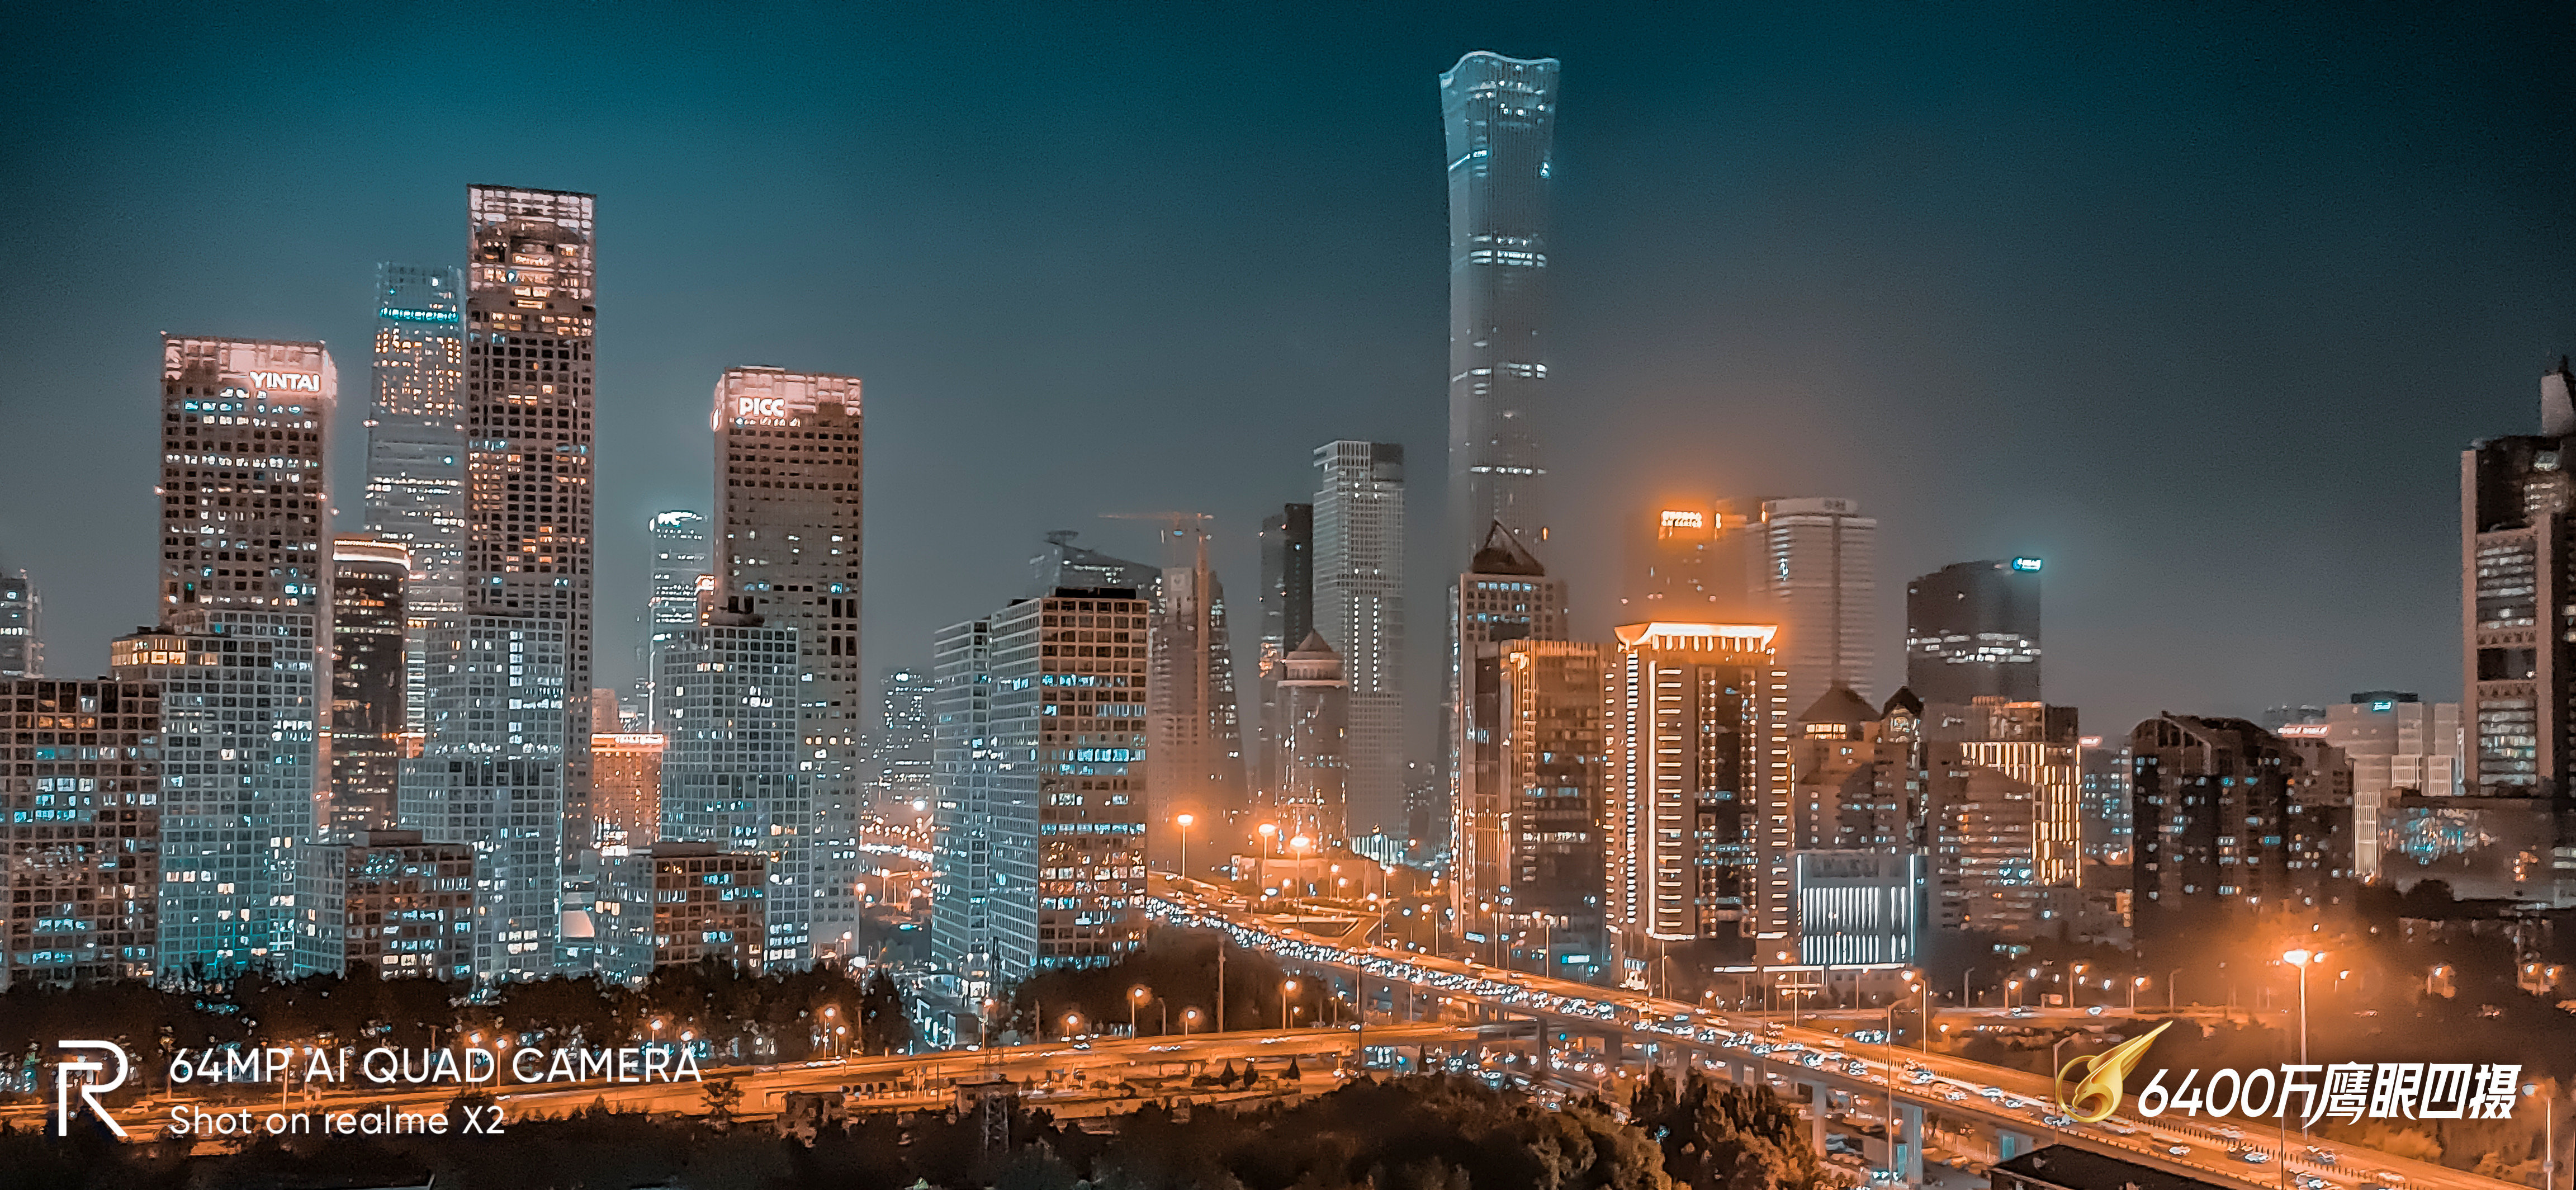 北京最爱的夜景 在国贸桥每次路过都会有一种夜灯初 圈子 新氧美容整形